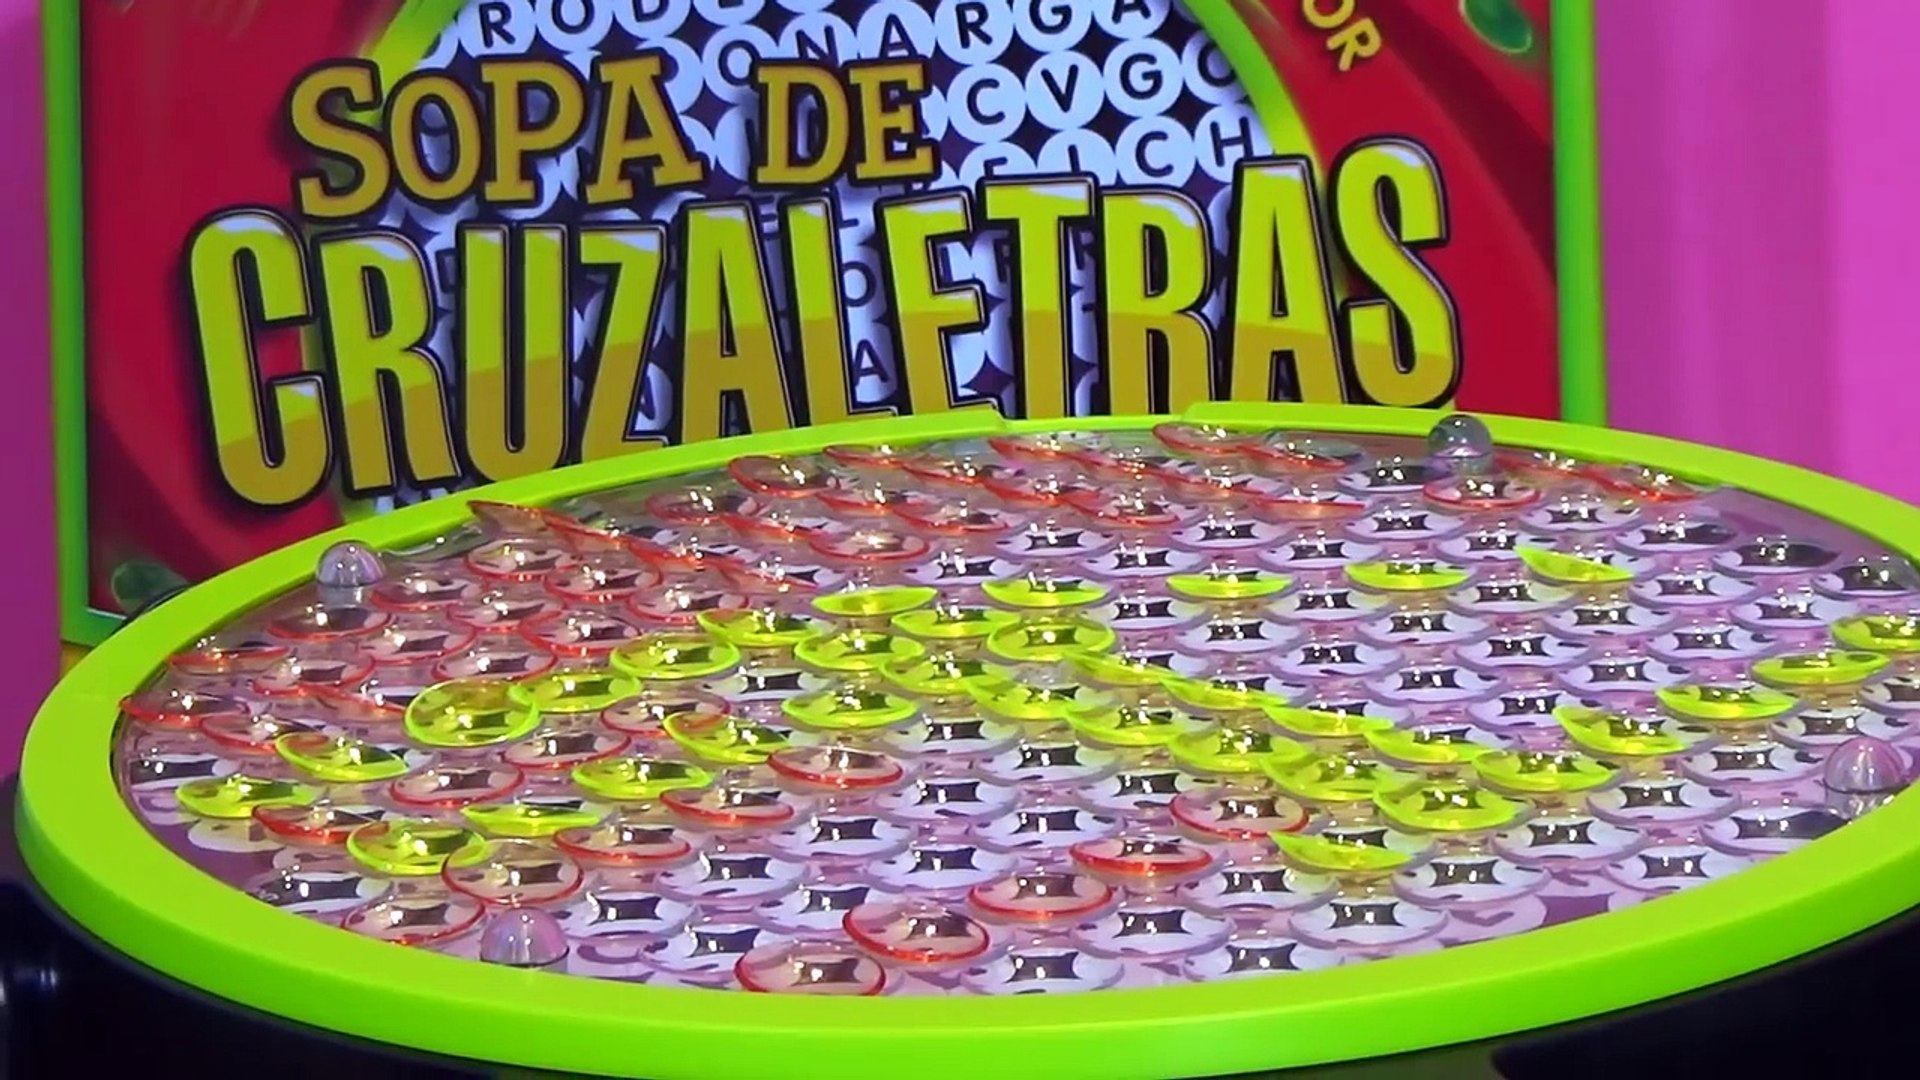 Sopa de Cruzaletras Juego de Mesa con Amanda y Alicia - juguetes en español  - Dailymotion Video